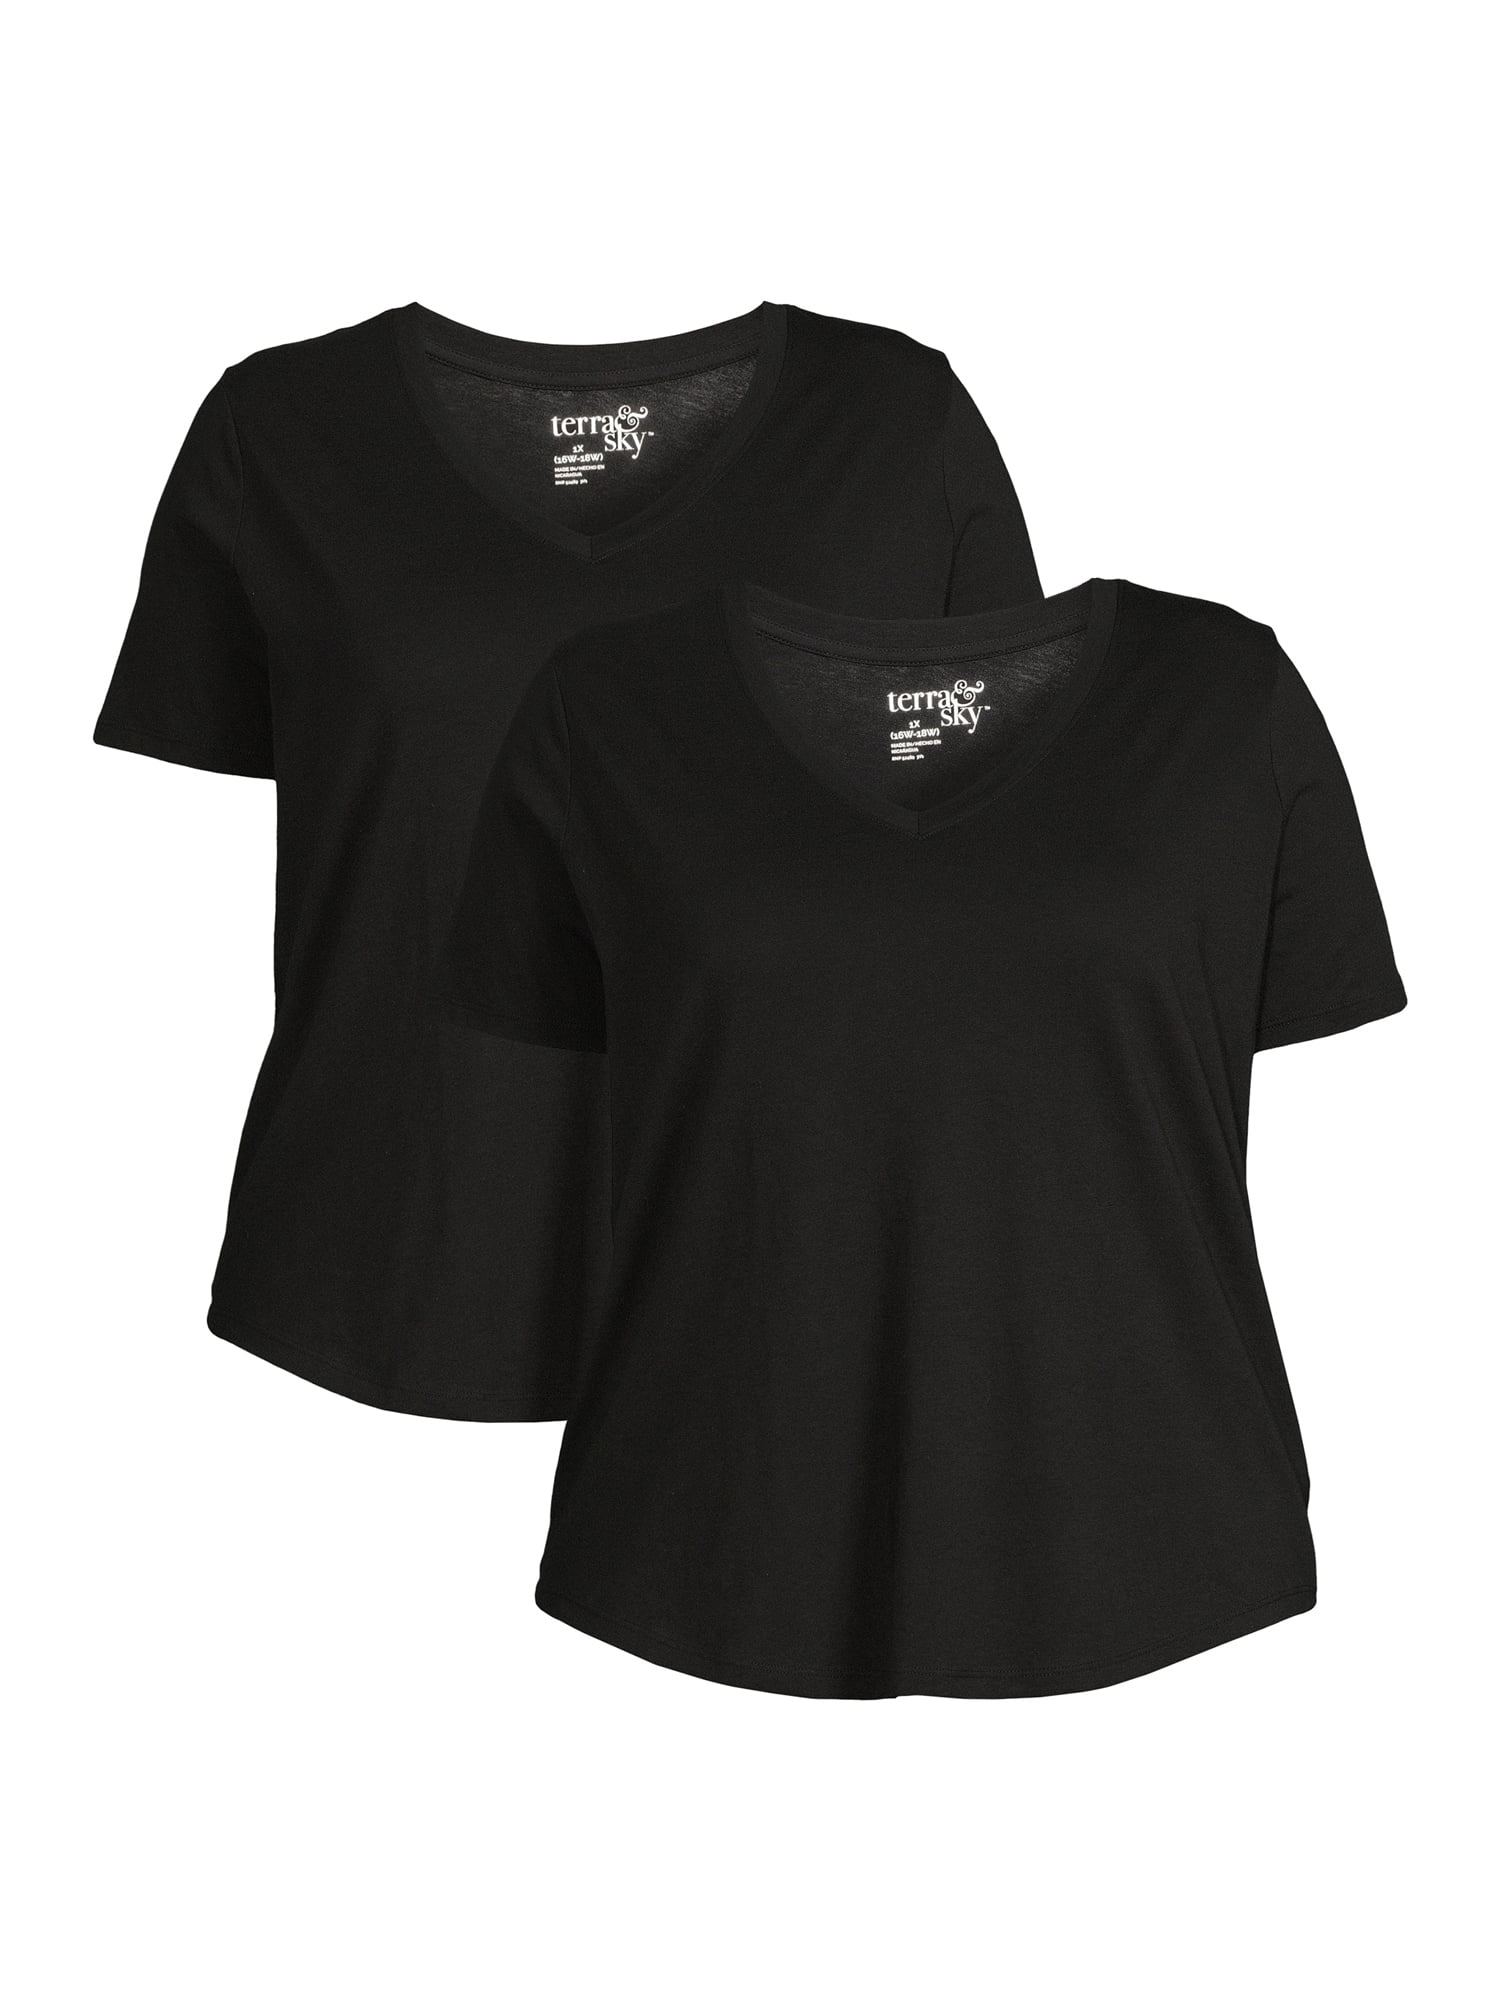 Women's Favorite Short-sleeve V-neck T-shirt